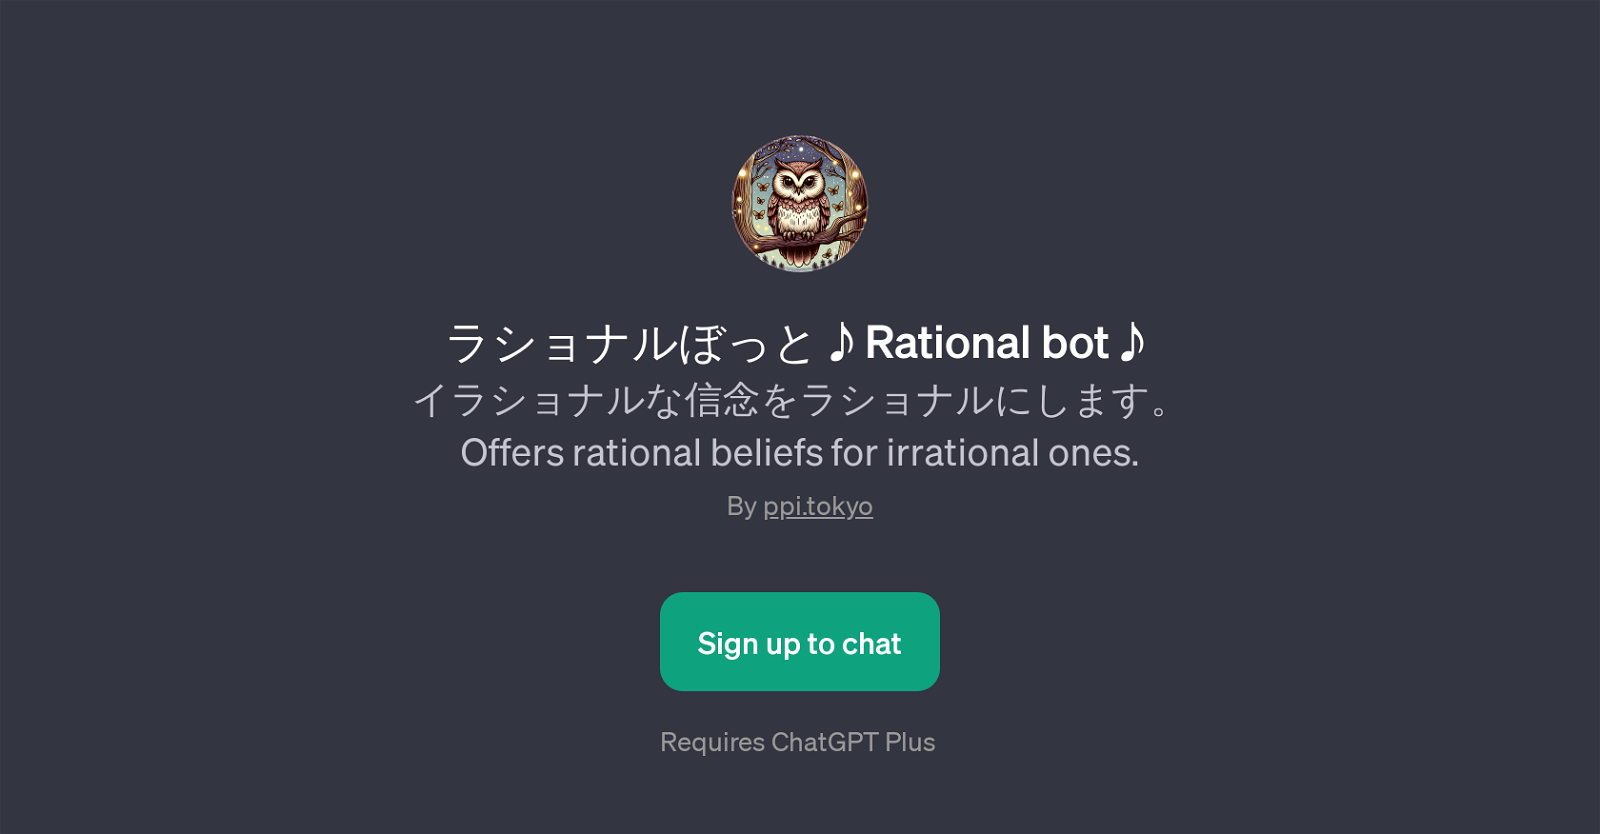 Rational bot website